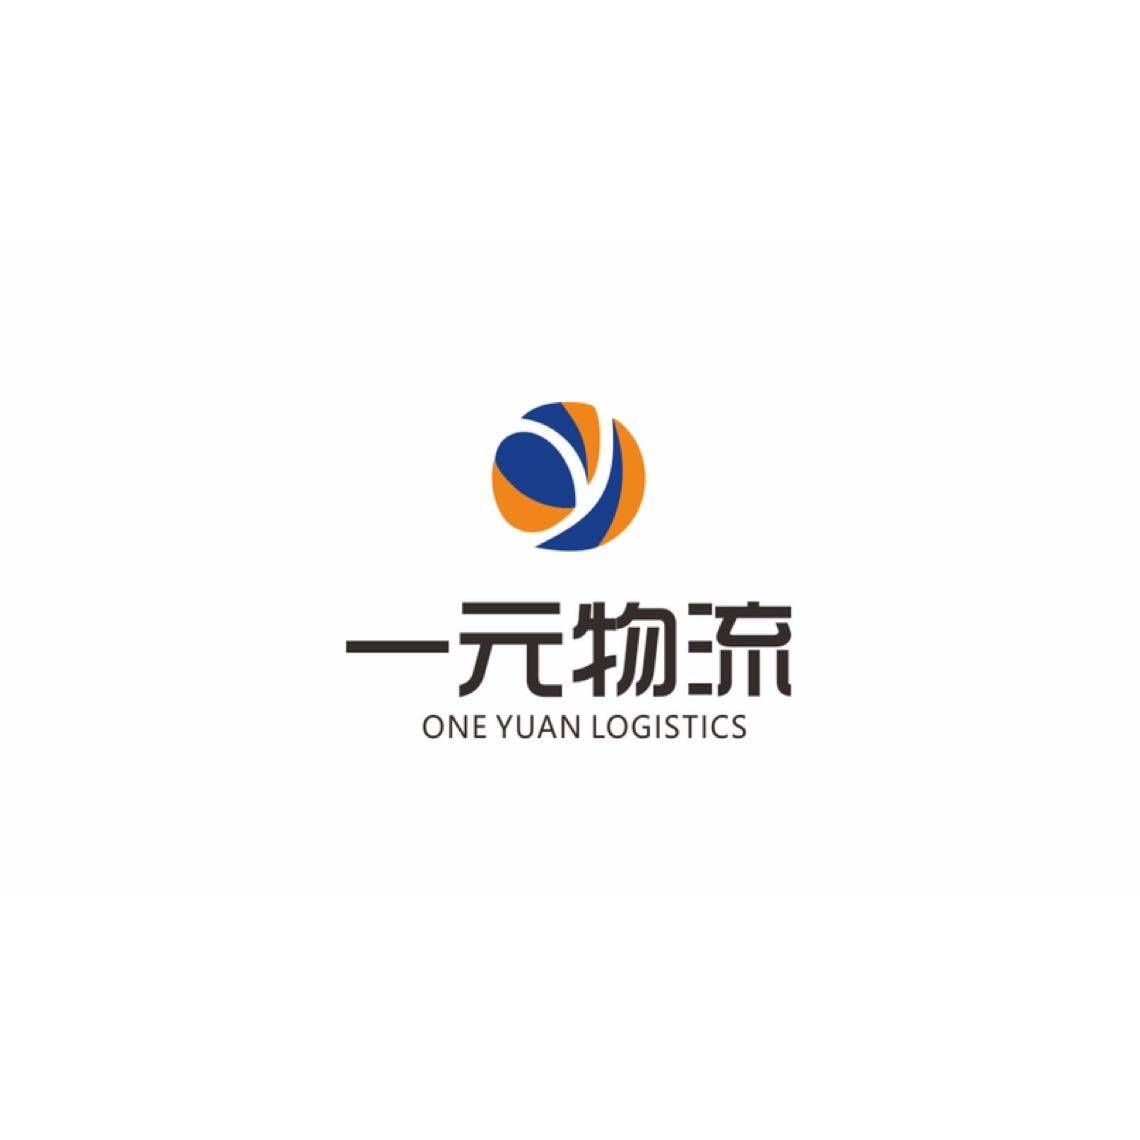 东莞市一元物流供应链有限公司logo